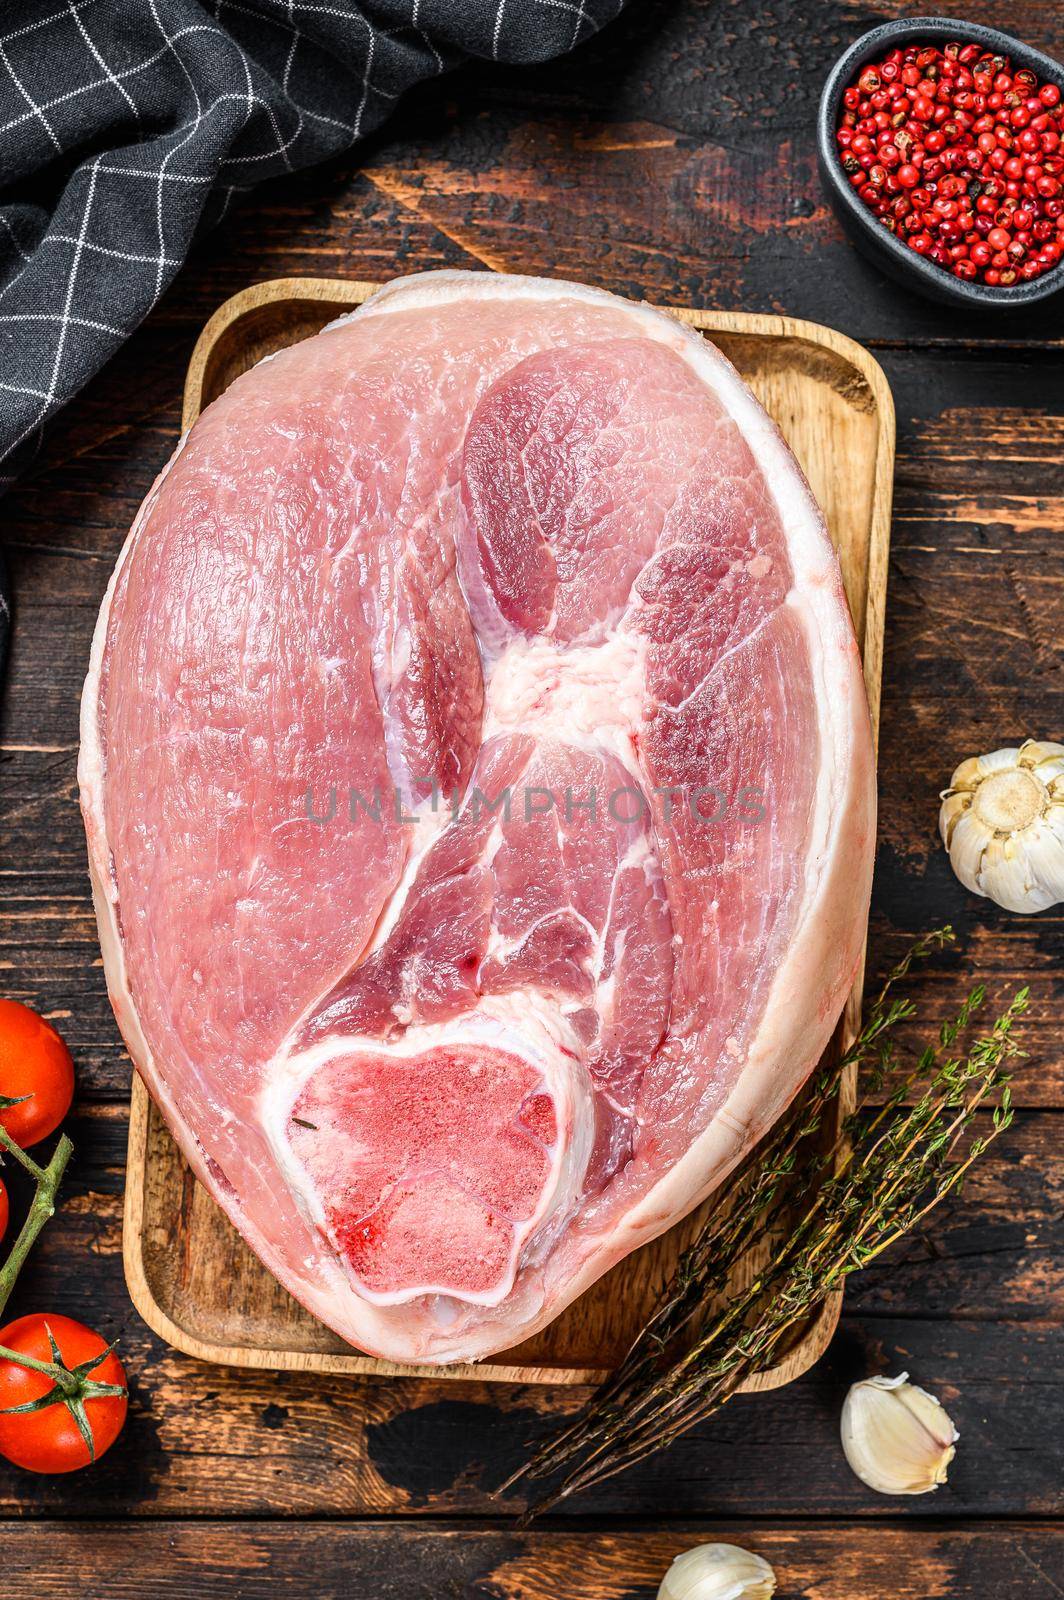 Cut of raw pork knuckle, leg on a cutting board. Farm fresh meat. Wooden dark background. Top view